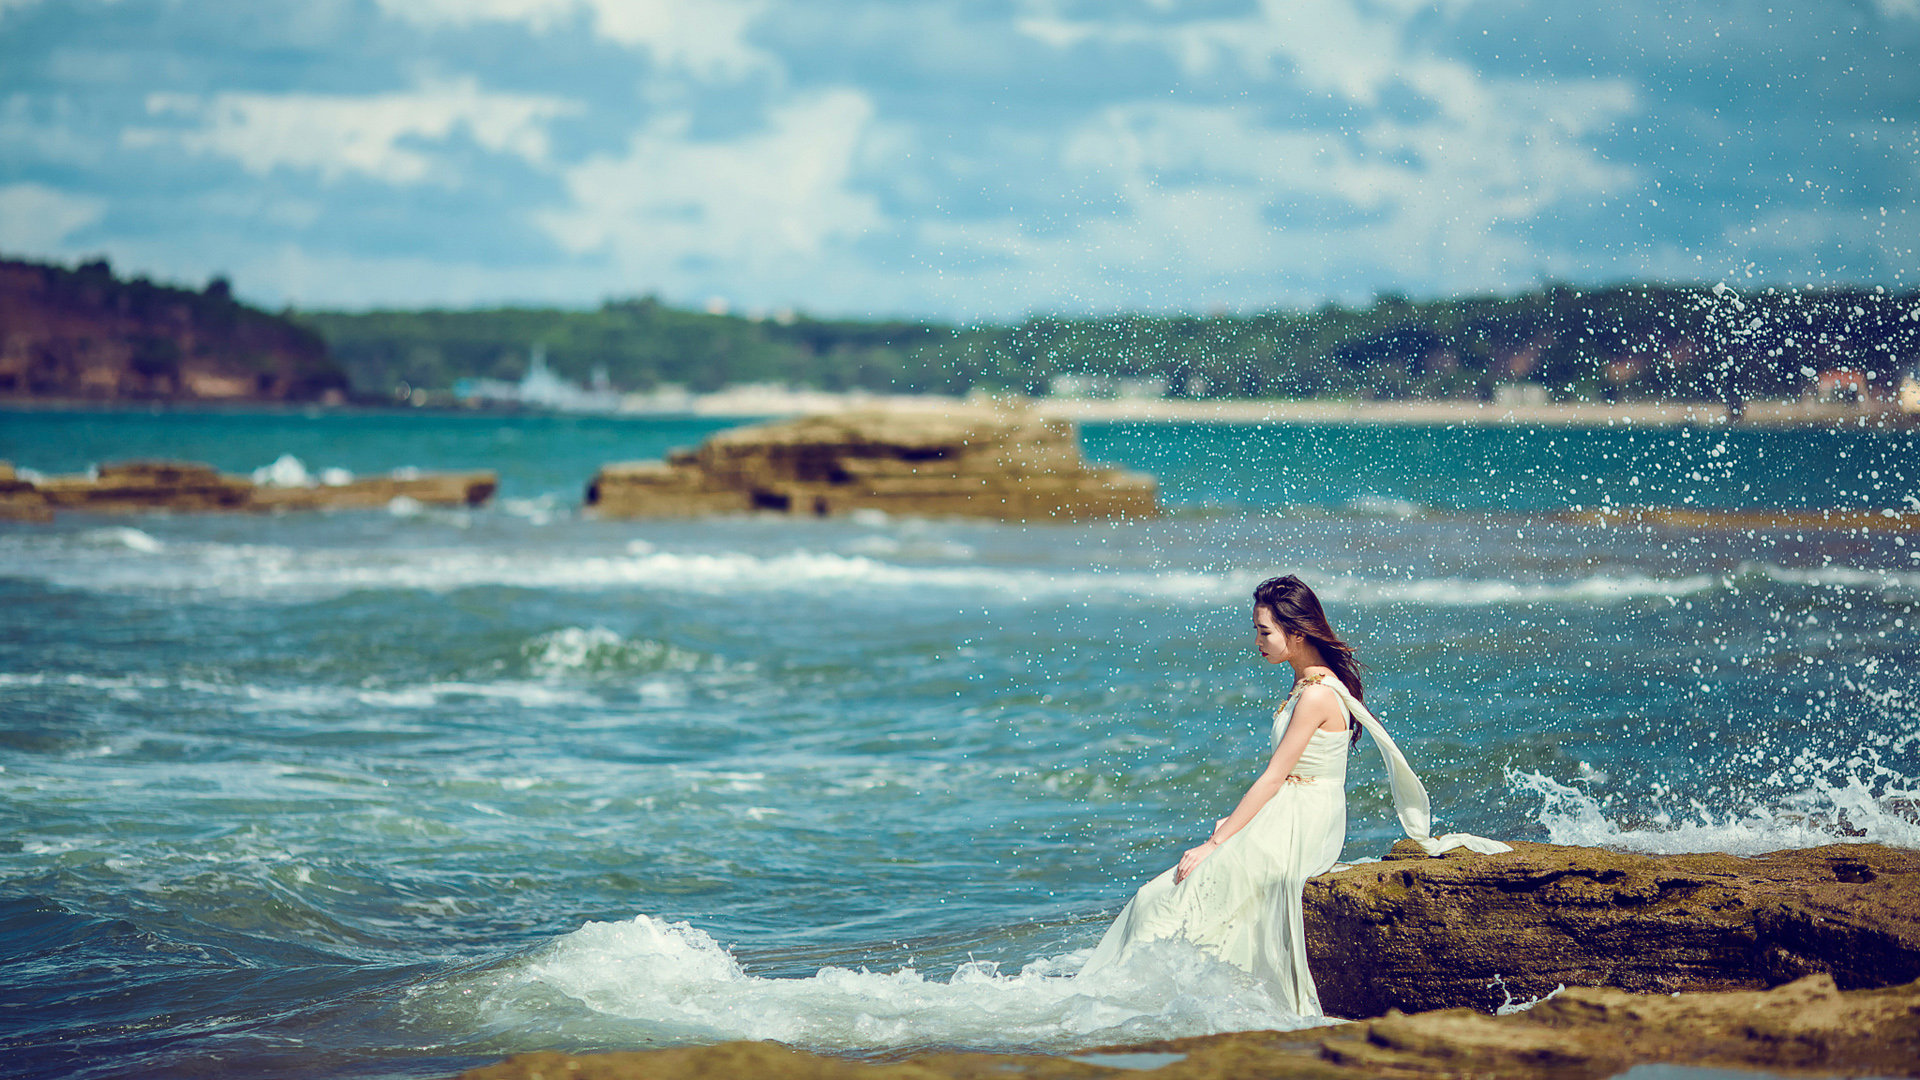 女孩，坐在岩石上，海边，冲浪，海浪，浪花，白色礼服，唯美意境壁纸